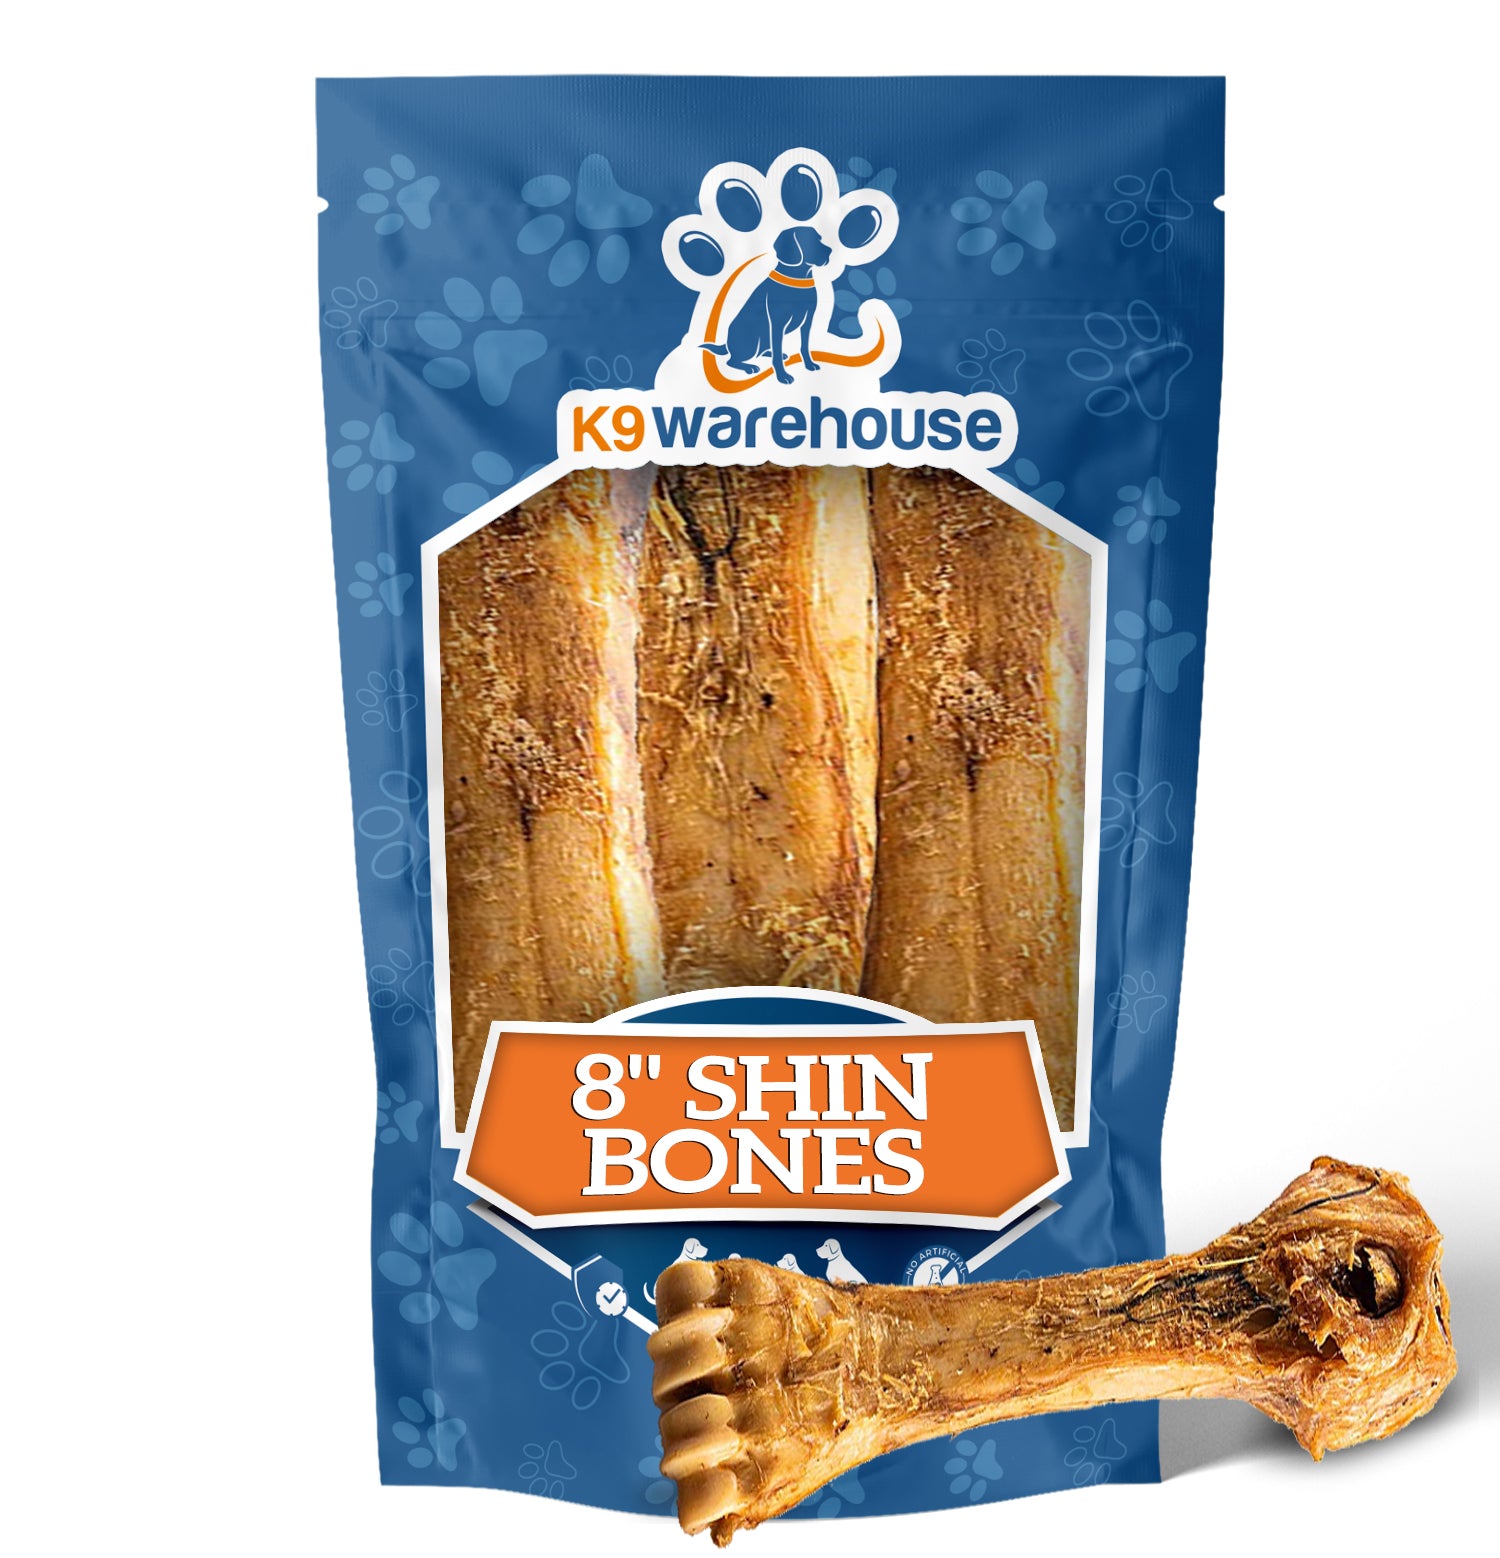 8" Shin Bone Dog Chews - 3 Count